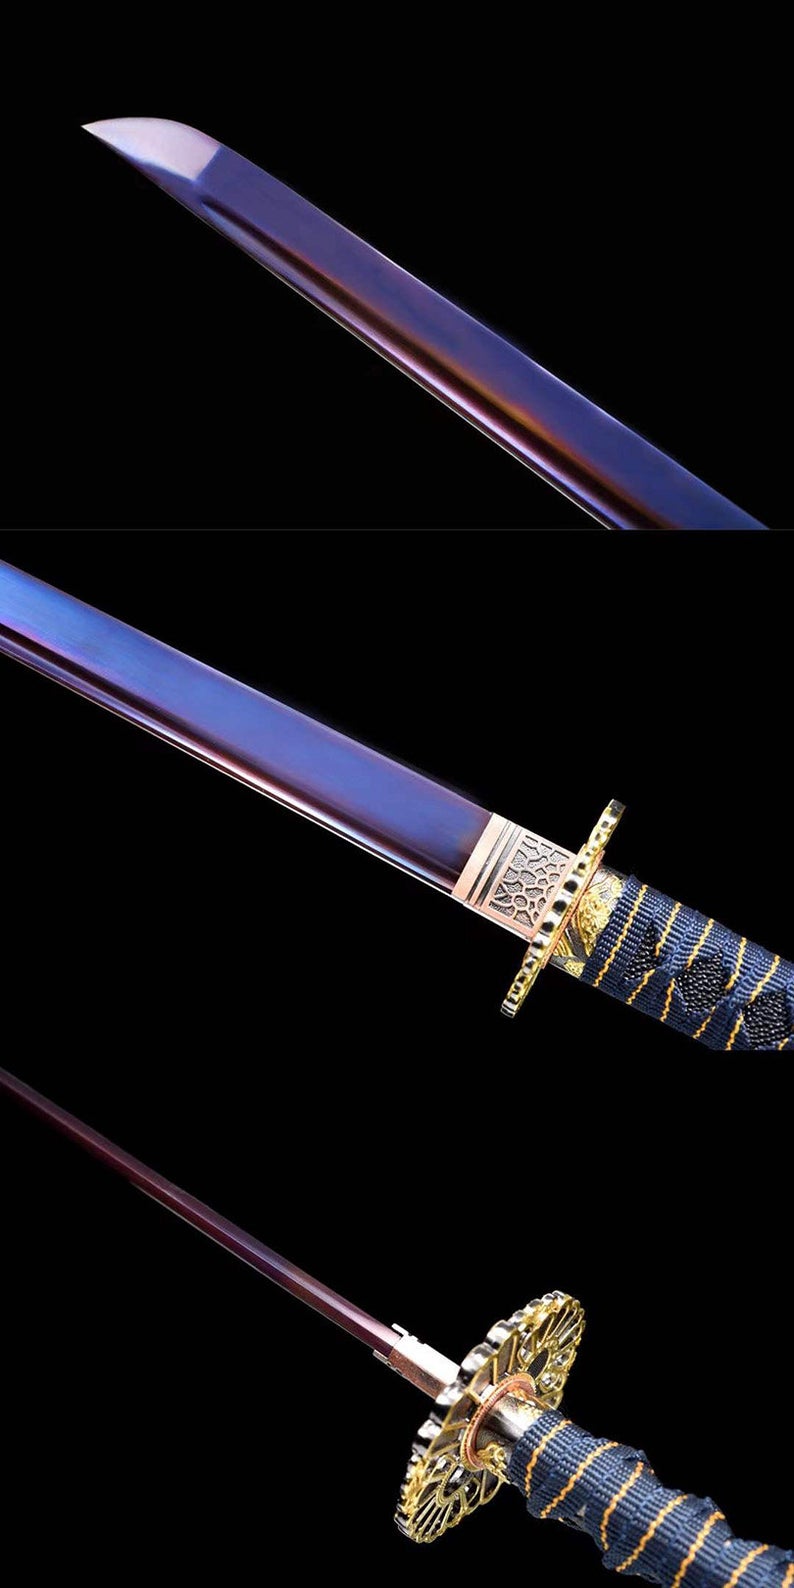 Handgefertigte japanische Schwerter Samurai Katana echtes Schwert 1045 Kohlenstoffstahl Ninjato blaue Klinge Geisteraugen 